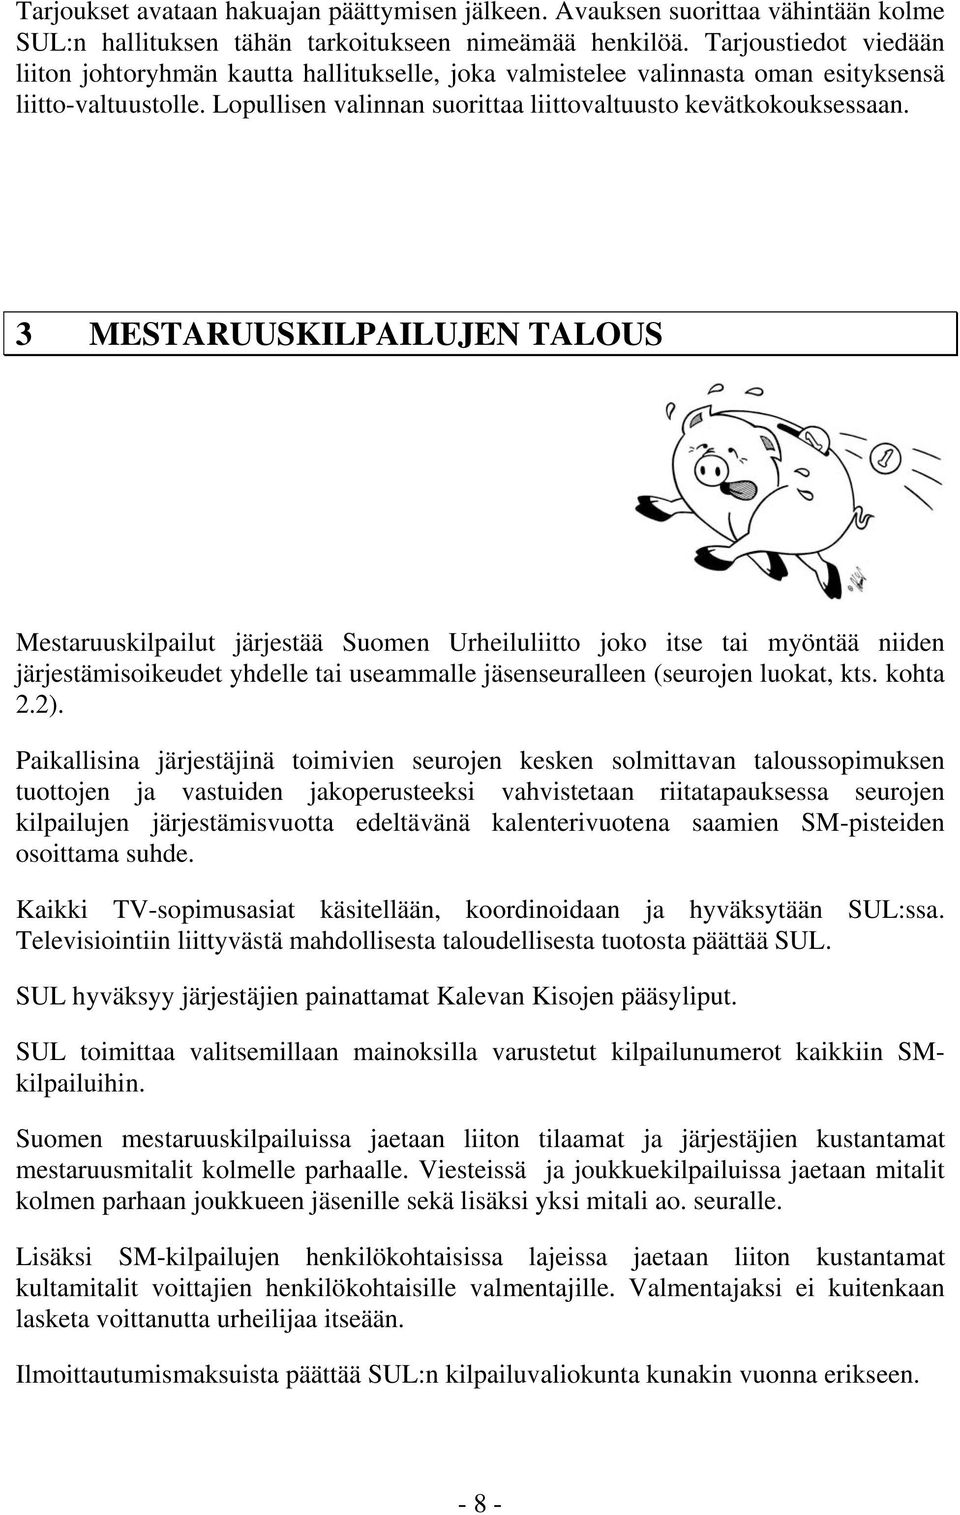 3 MESTARUUSKILPAILUJEN TALOUS Mestaruuskilpailut järjestää Suomen Urheiluliitto joko itse tai myöntää niiden järjestämisoikeudet yhdelle tai useammalle jäsenseuralleen (seurojen luokat, kts. kohta 2.